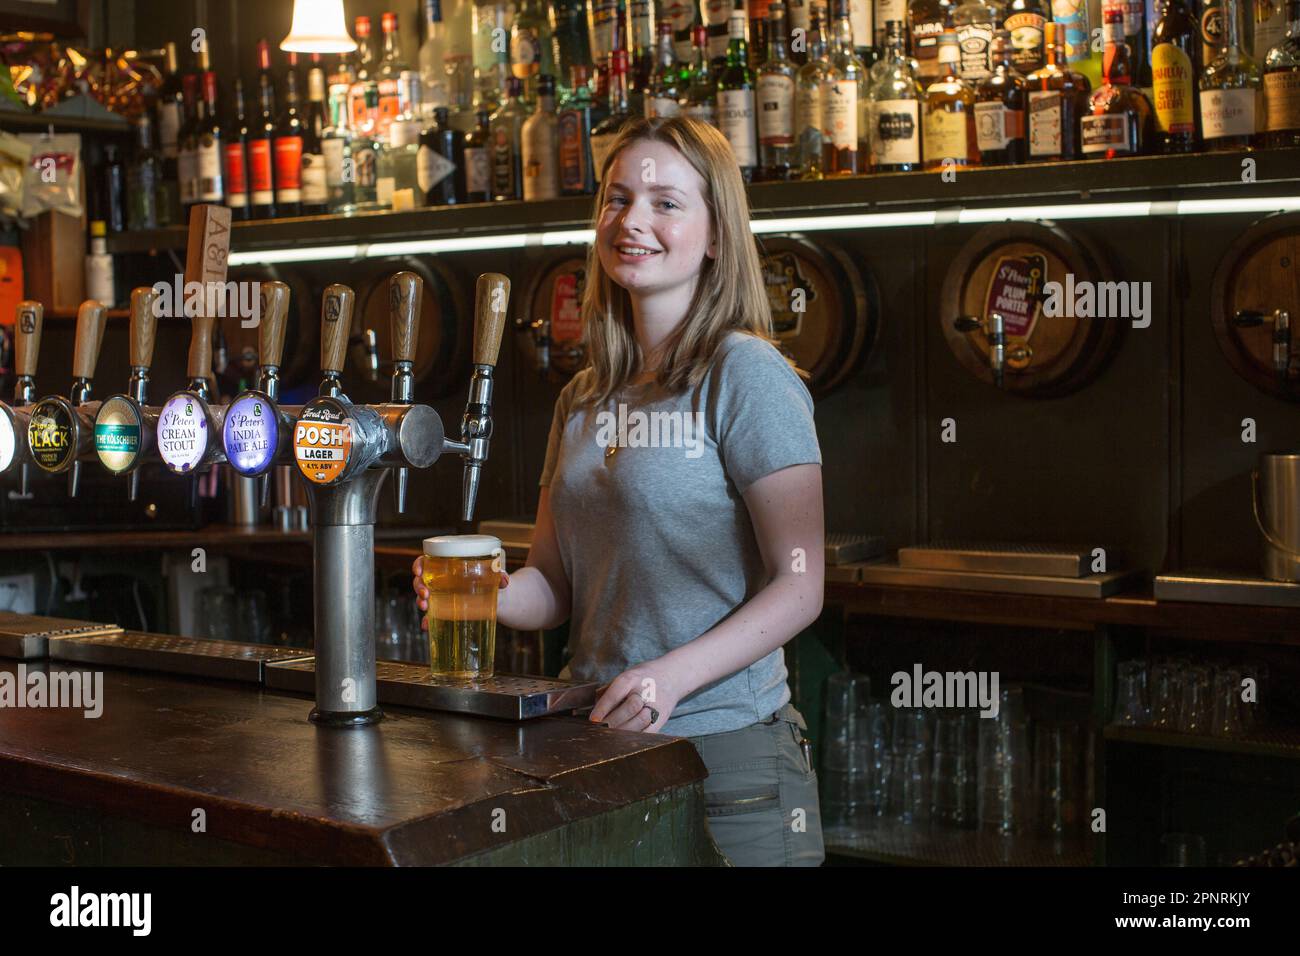 Pub barmaid versant une pinte de bière dans le pub, The Holy Tavern, dans Britton Street, Clerkenwell, Londres, Angleterre, Royaume-Uni. Banque D'Images